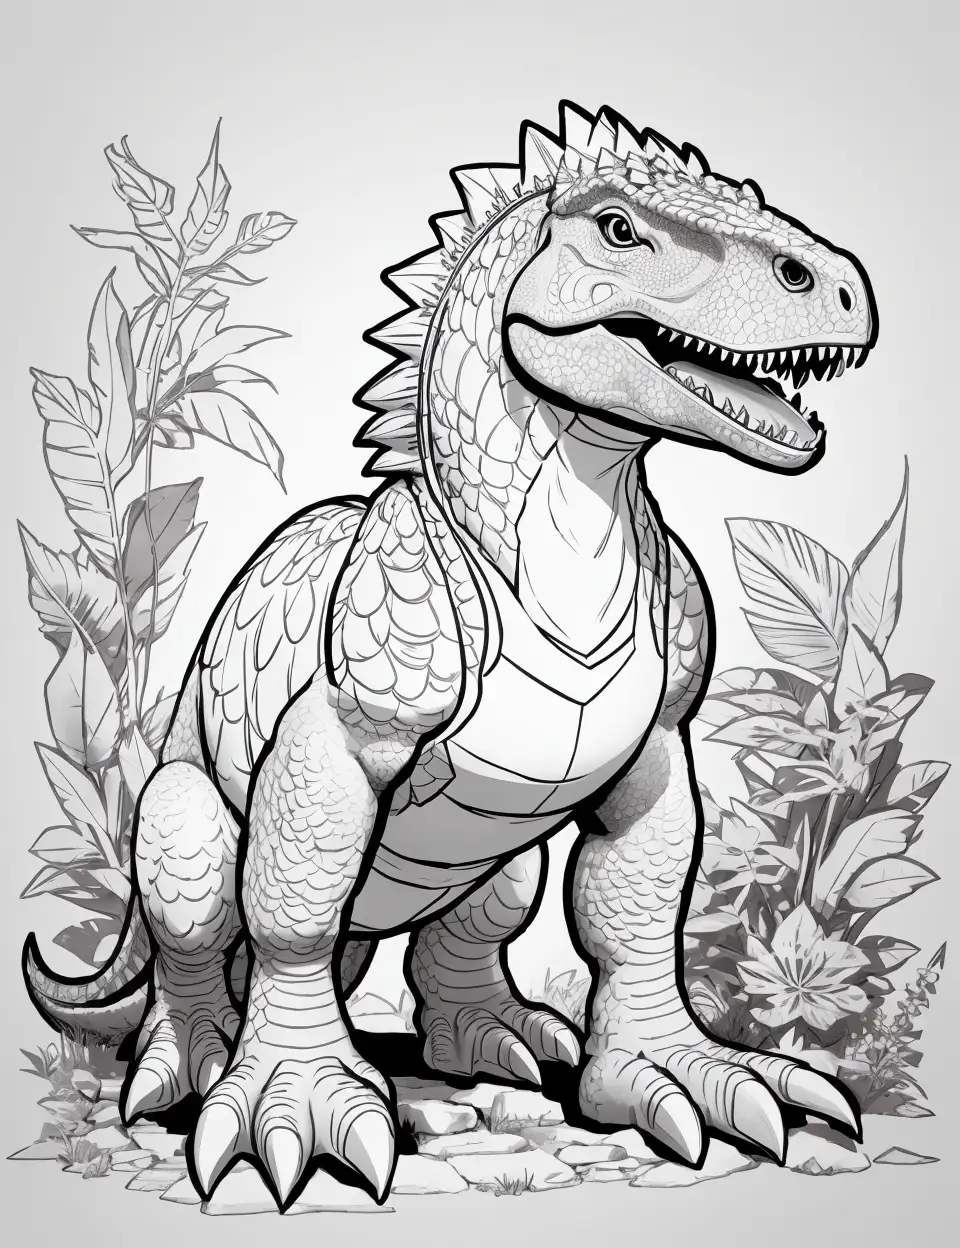 Dibujos de dinosaurios ornitisquios para colorear